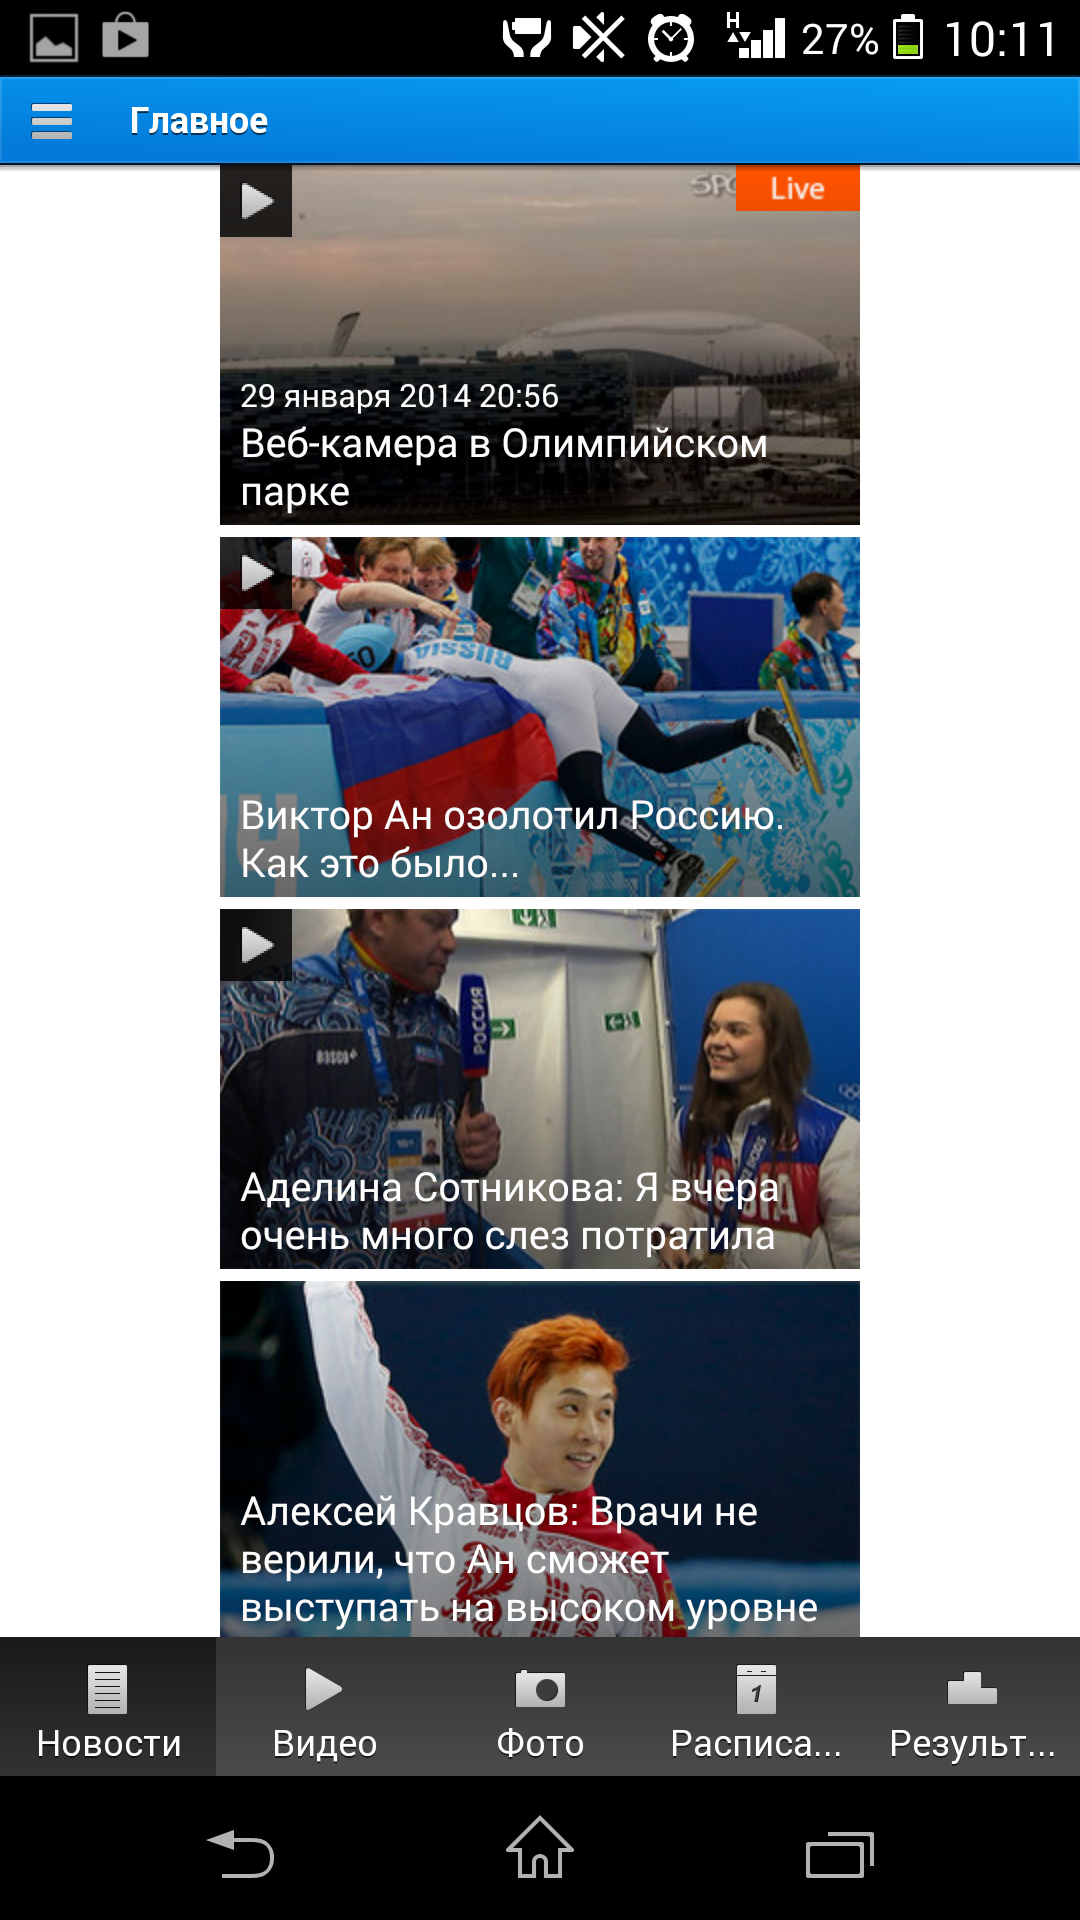 Спортбокс новости сегодня результаты. Спортбокс. Sportbox.ru. Спортбокс футбол. Спортбокс новости спорта.